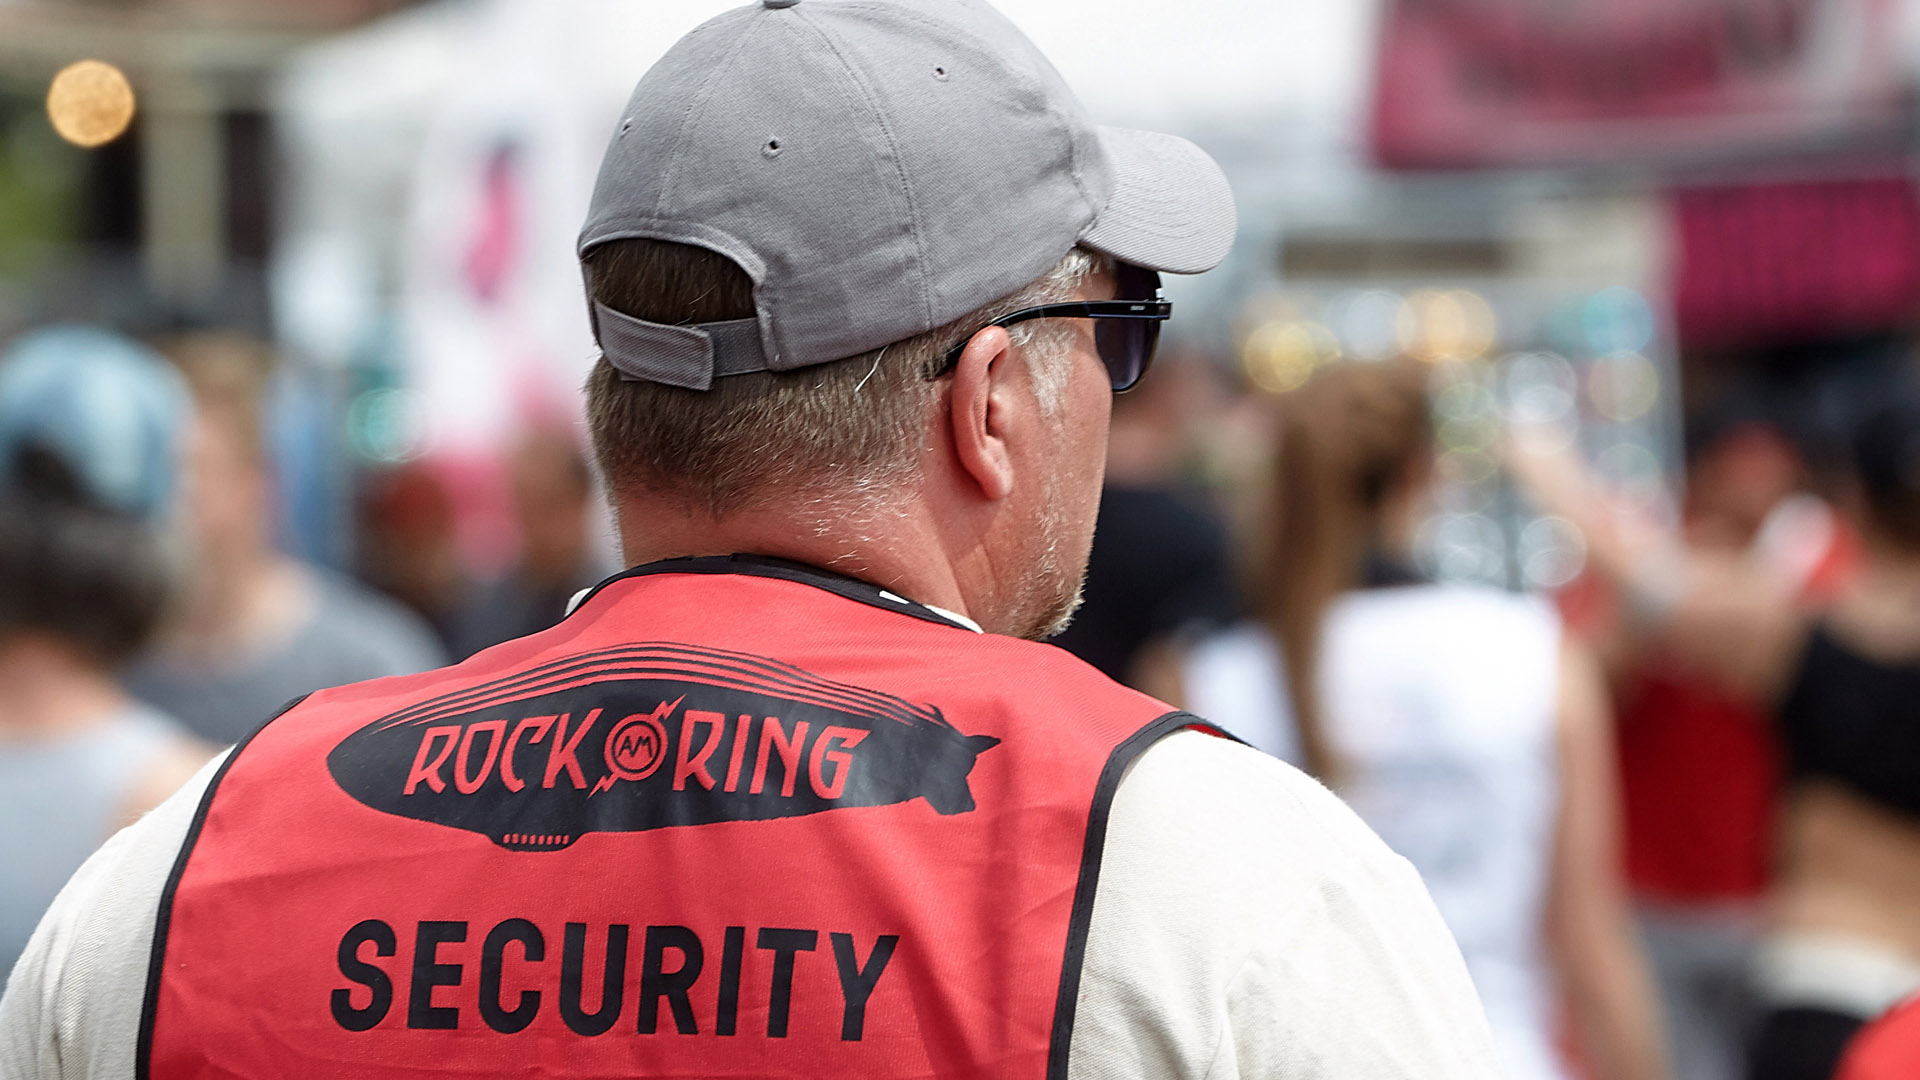 Mitarbeiter eines Sicherheitsdienstes des Musikfestivals "Rock am Ring" | Bildquelle: dpa